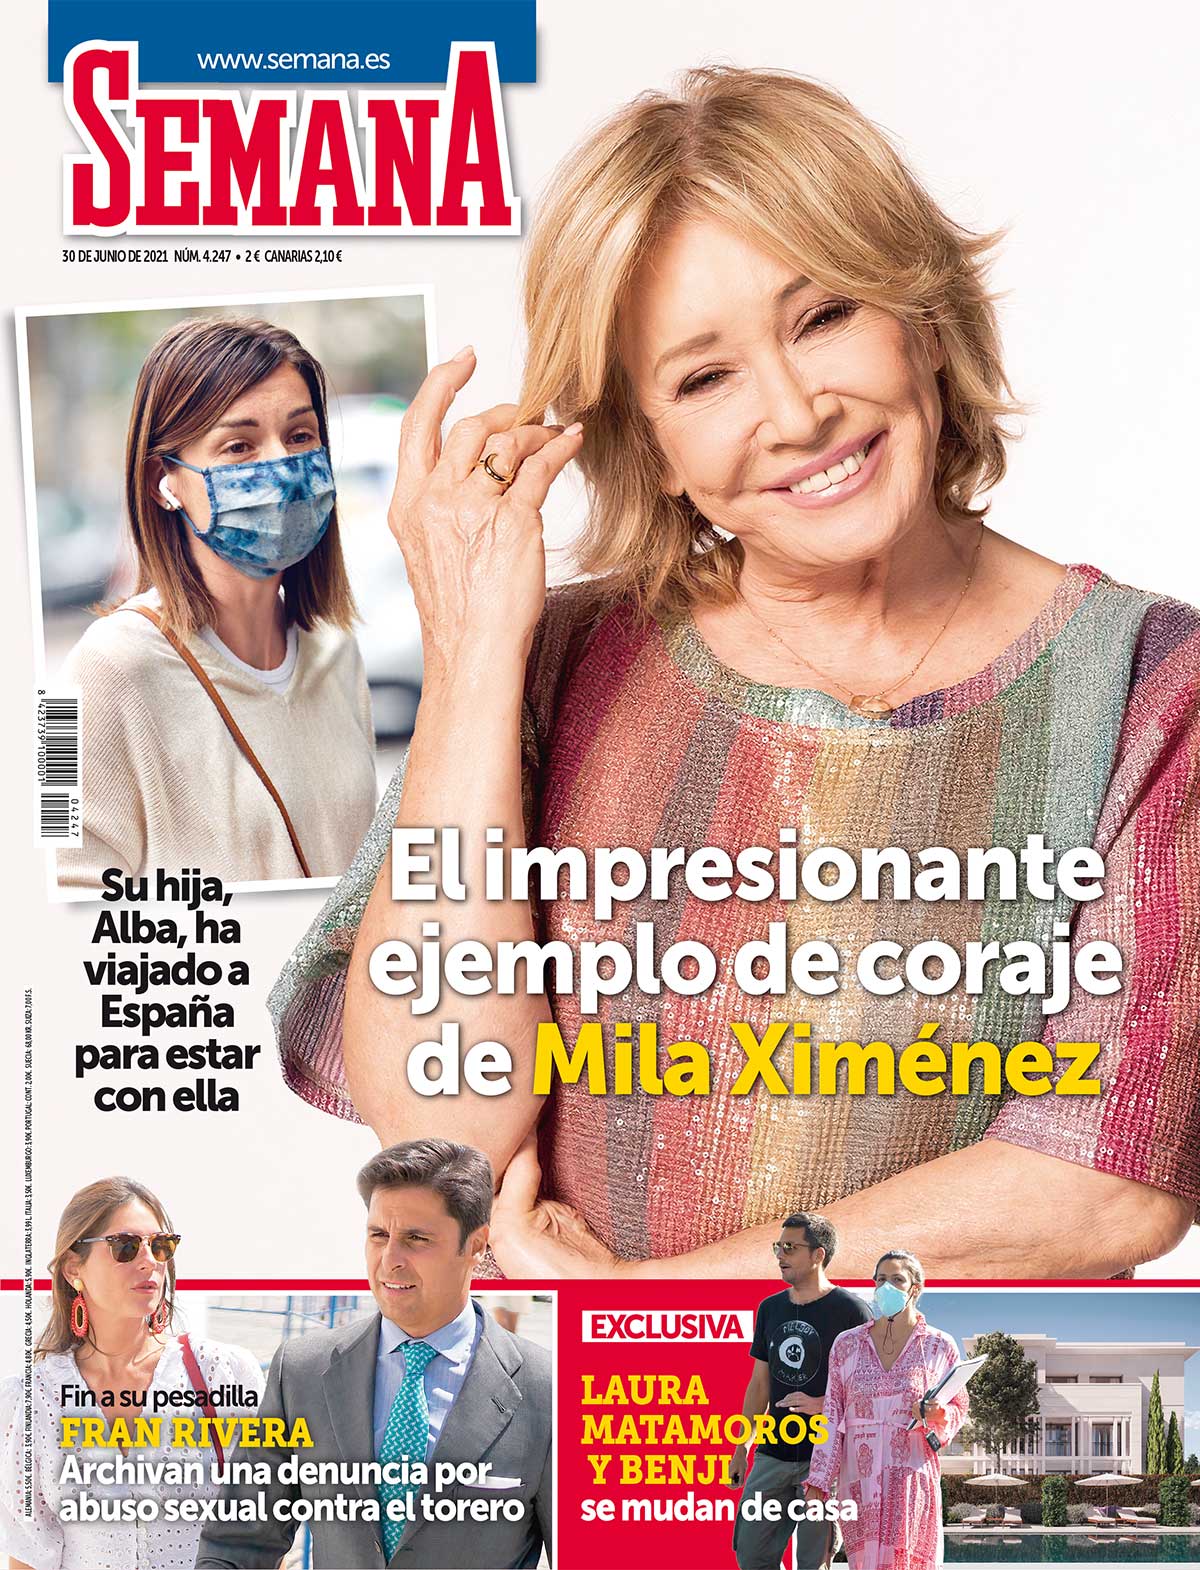 En SEMANA, el impresionante coraje de Mila Ximénez